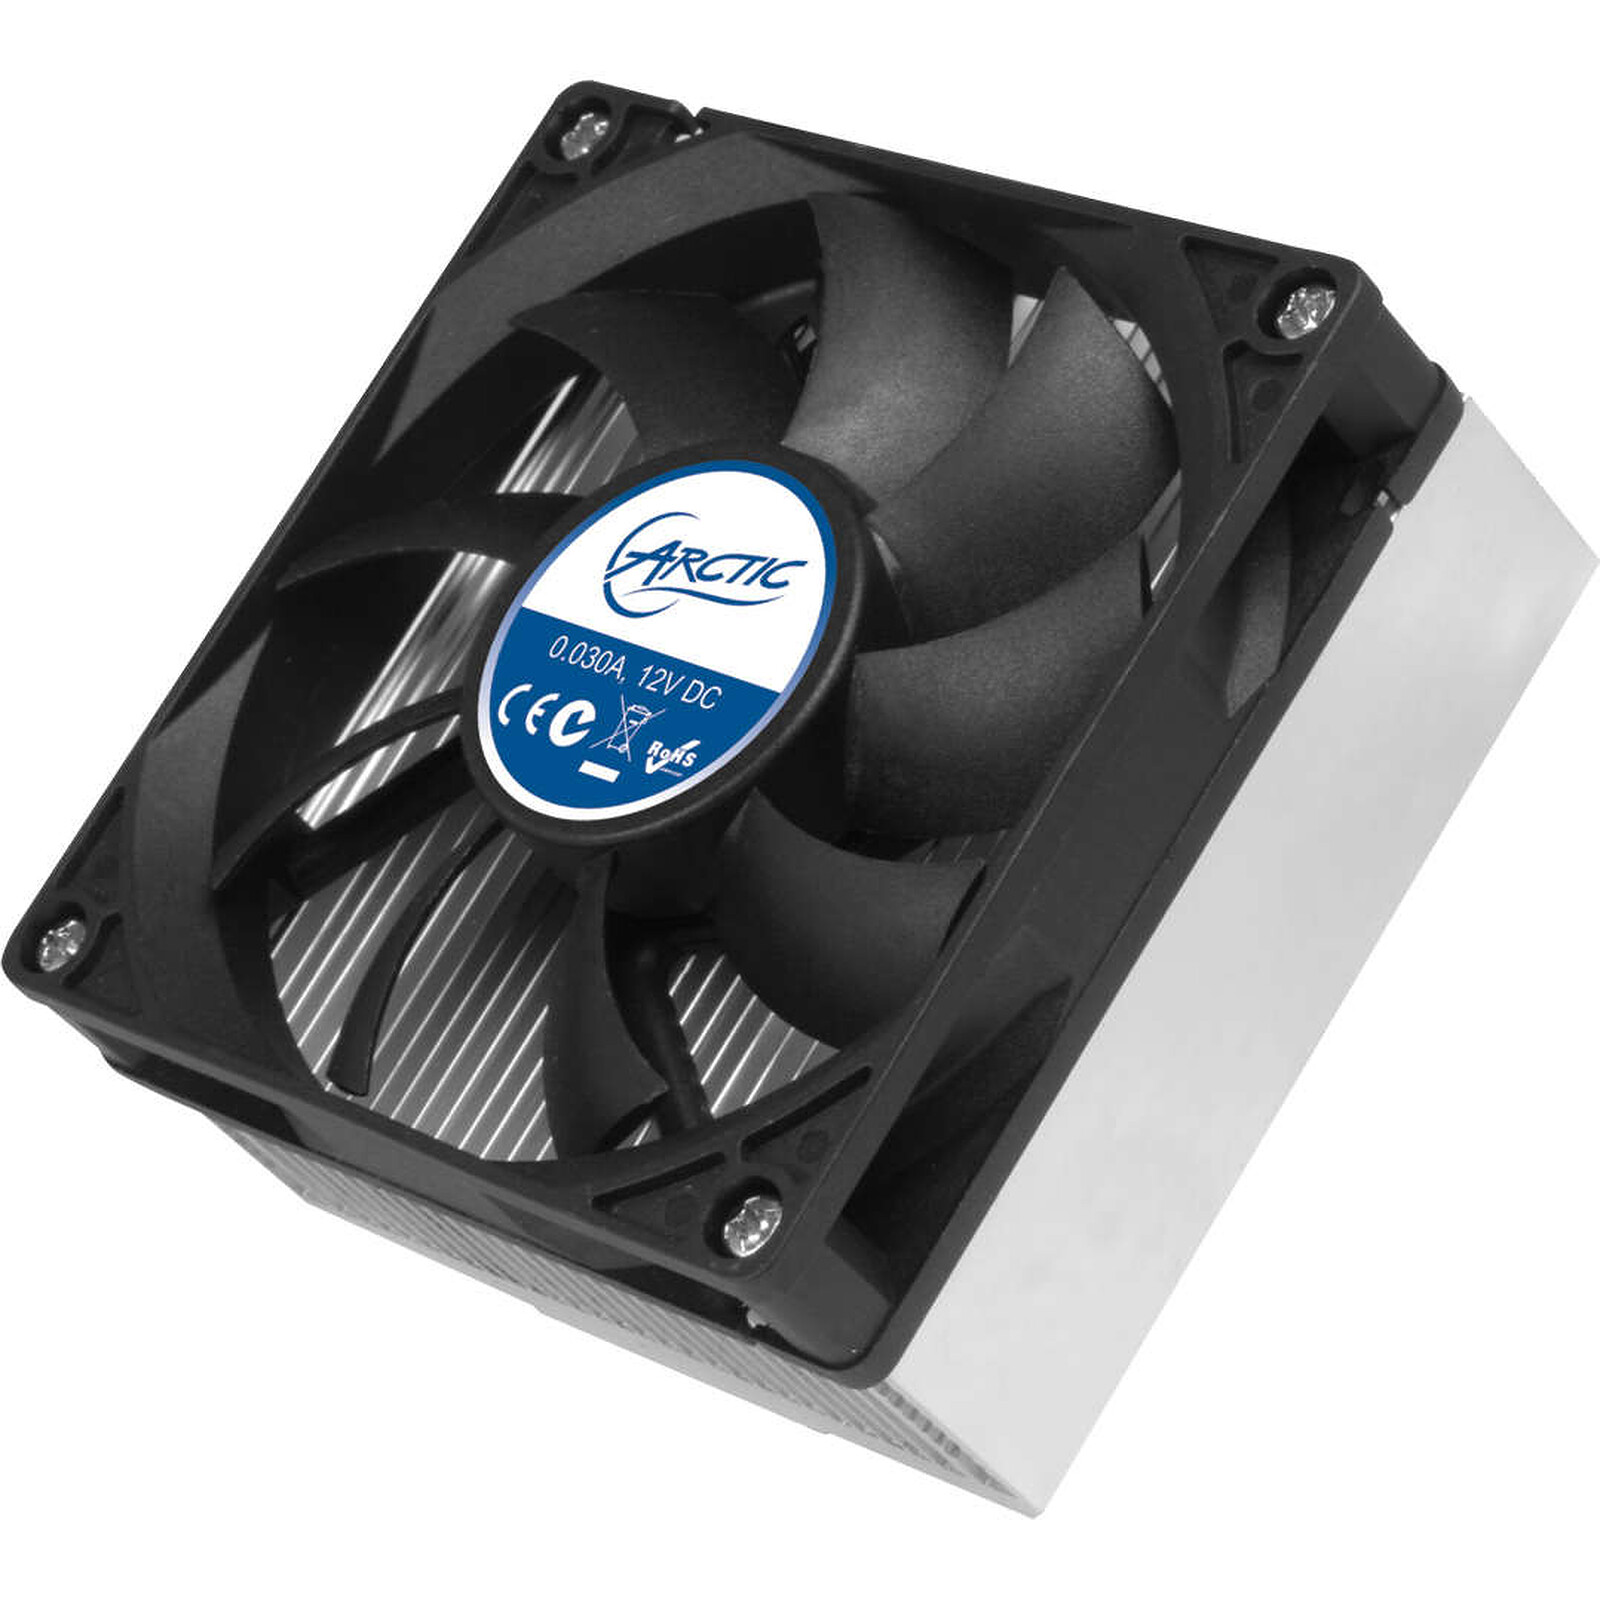 Ventilador de ordenador para AMD AM4 ARCTIC Alpine 64 Pro Cooler CPU muy silencioso 